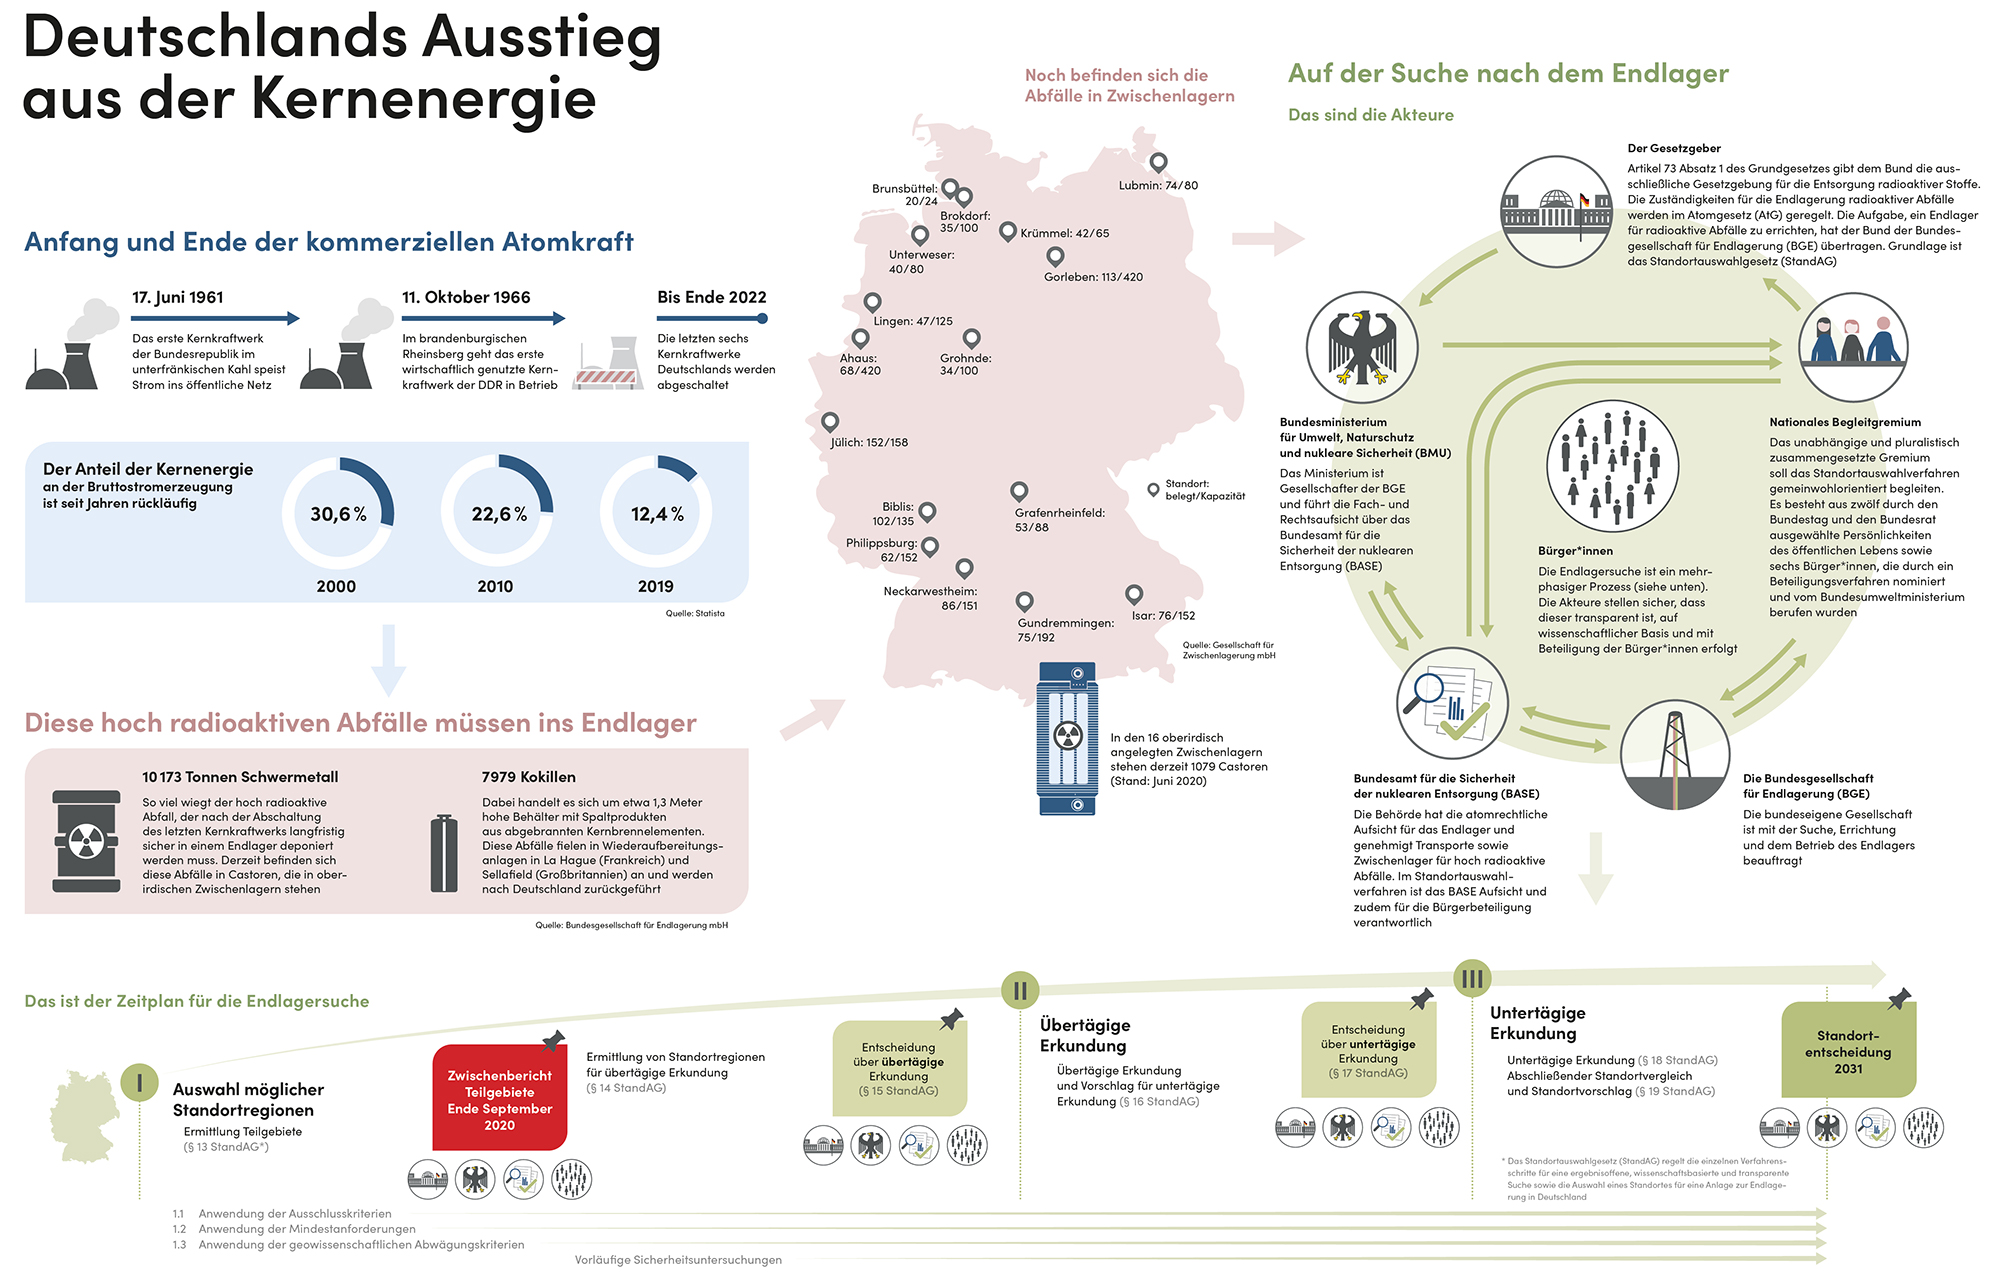 Die Infografik beschreibt Deutschlands Ausstieg aus der Kernenergie